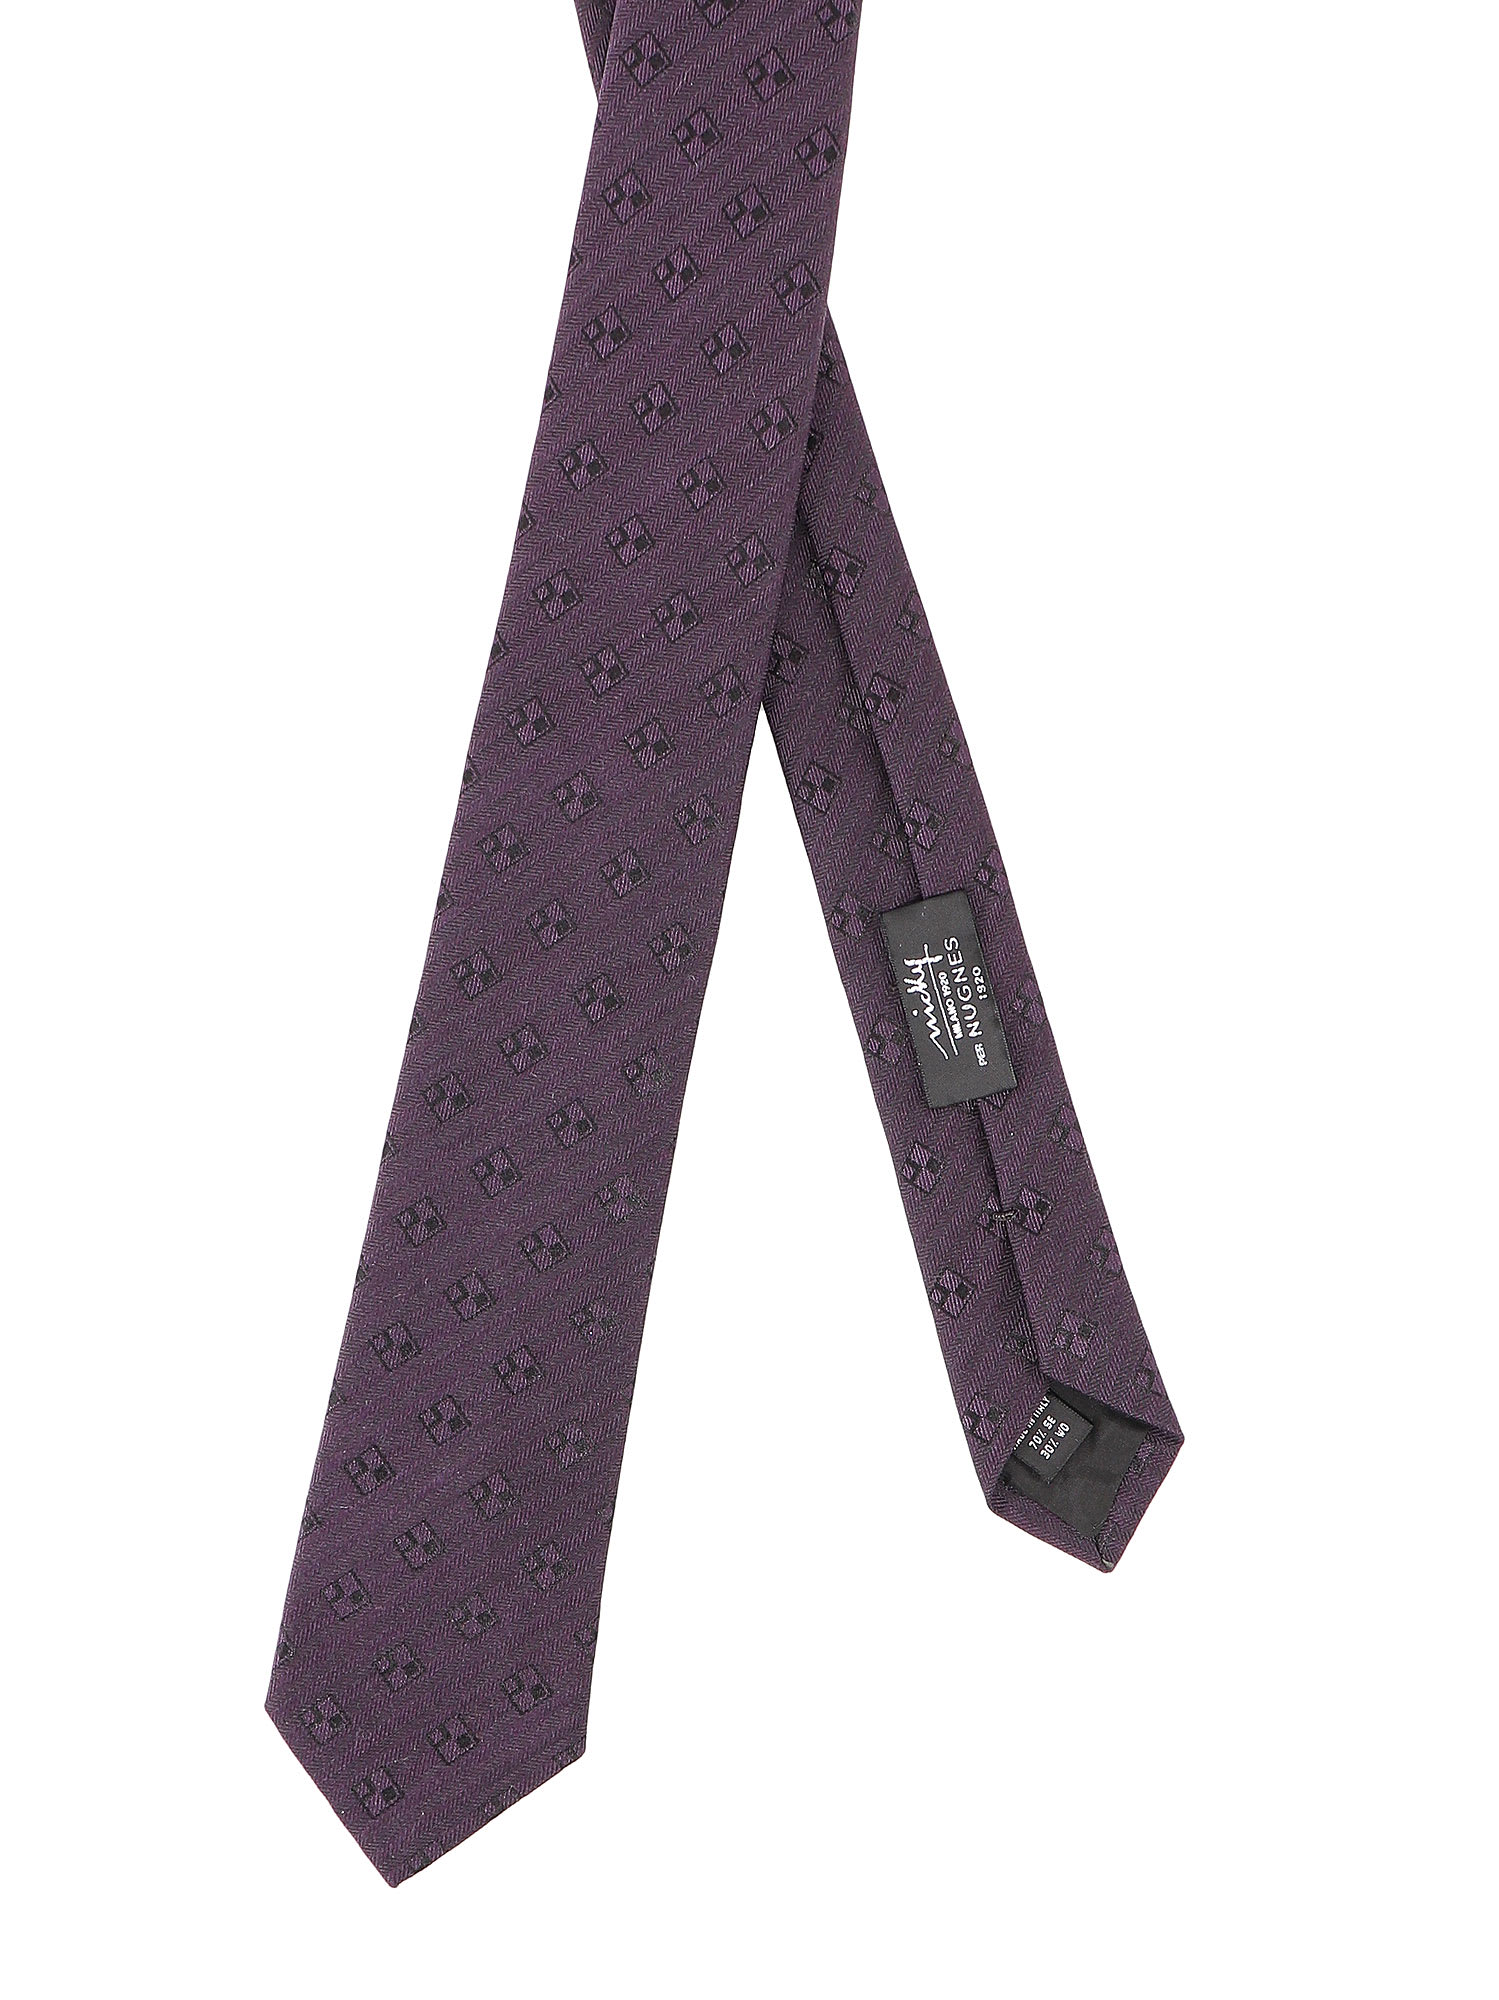 Shop Nicky Tie In Purple